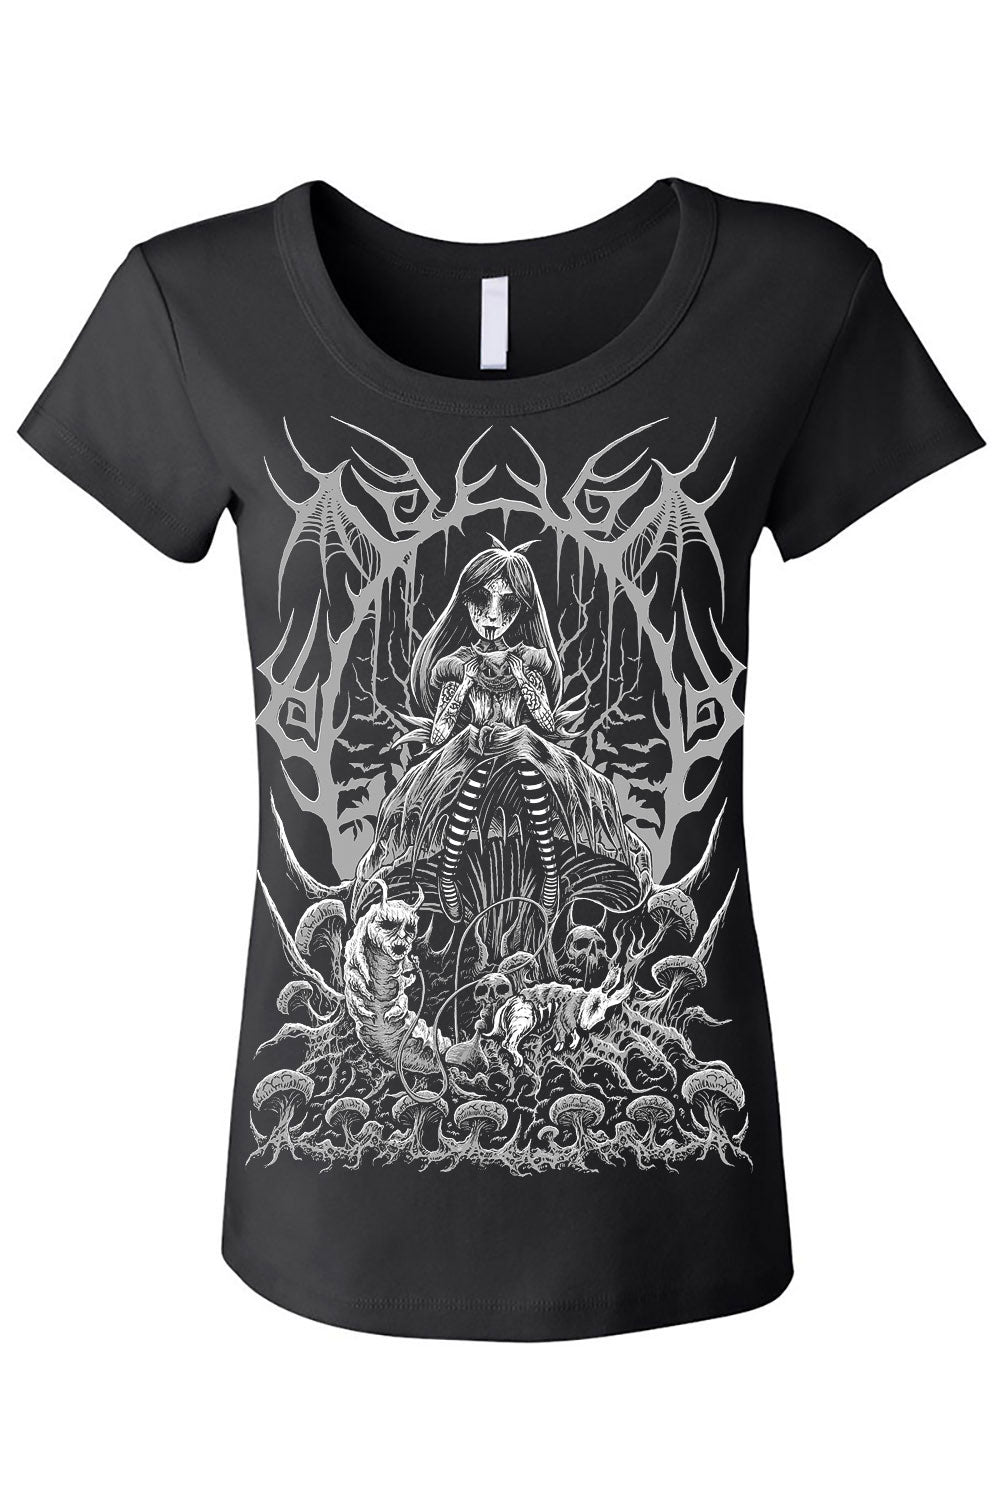 Dark Alice v2 T-shirt